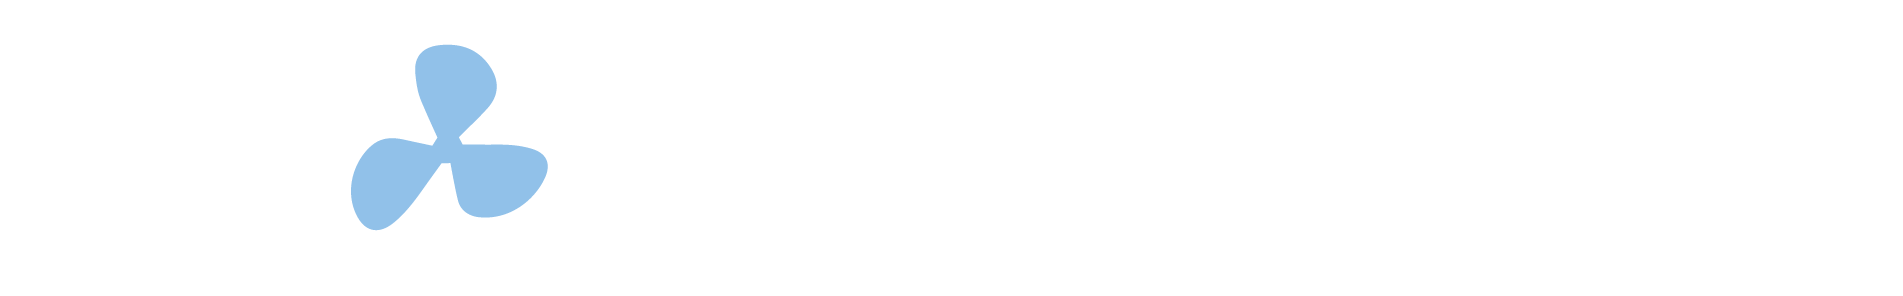 Portnet logo